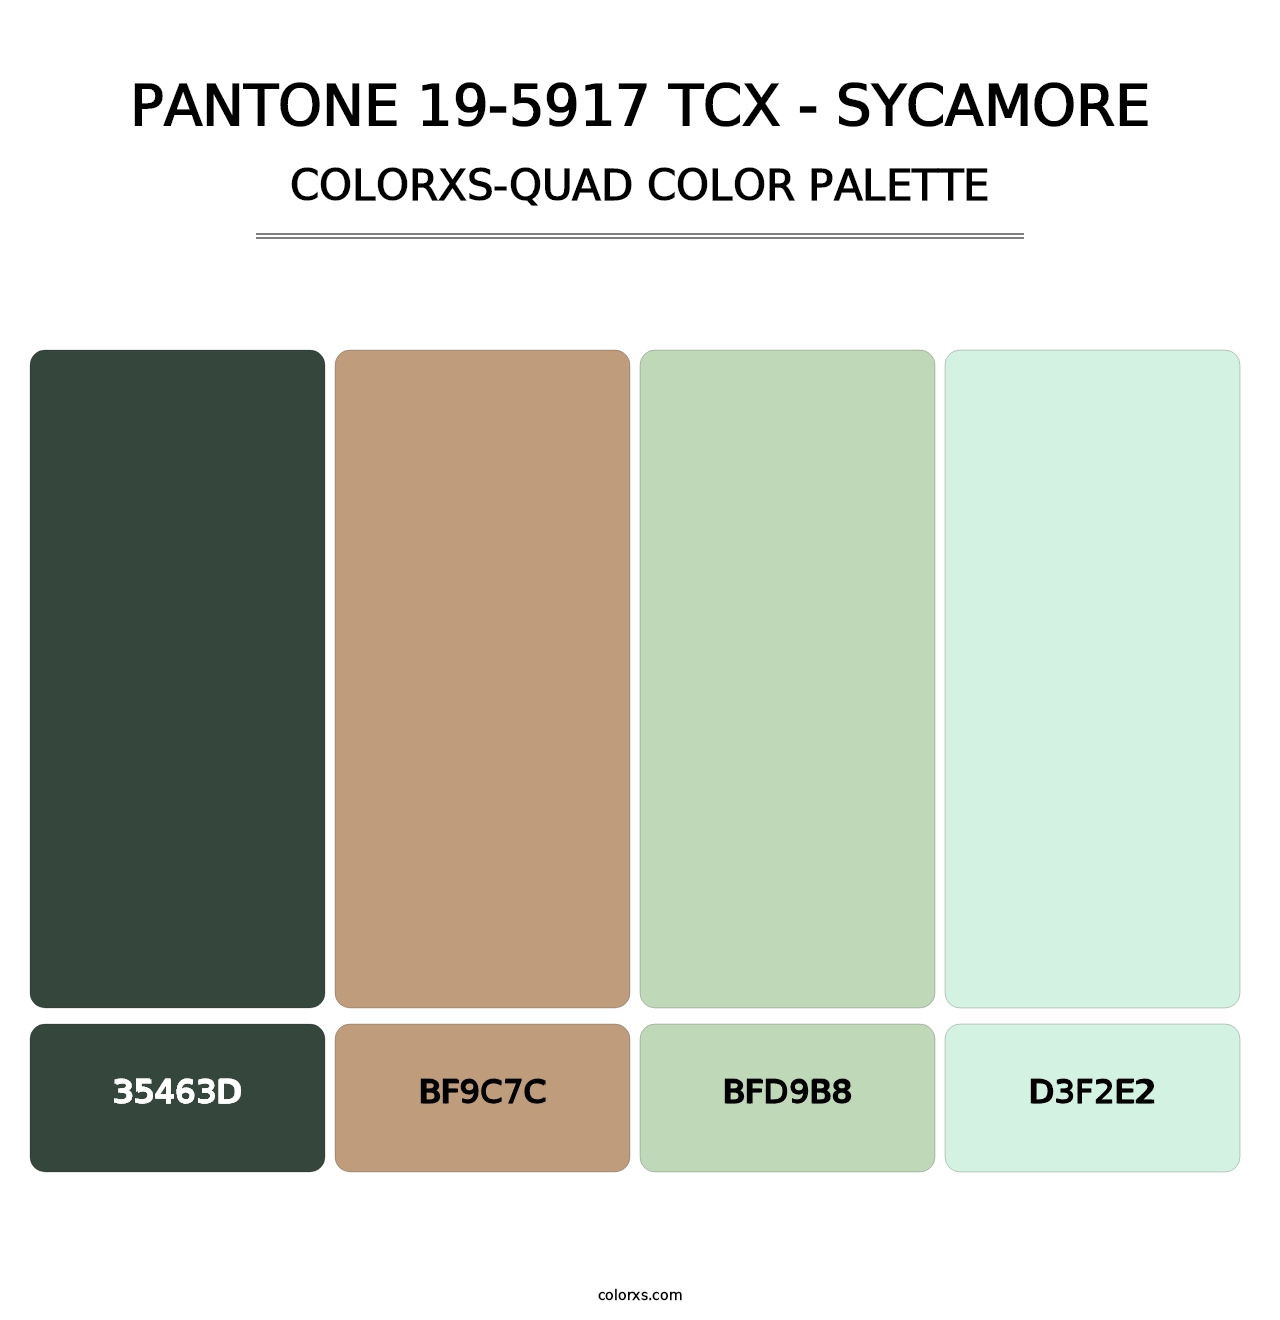 PANTONE 19-5917 TCX - Sycamore - Colorxs Quad Palette